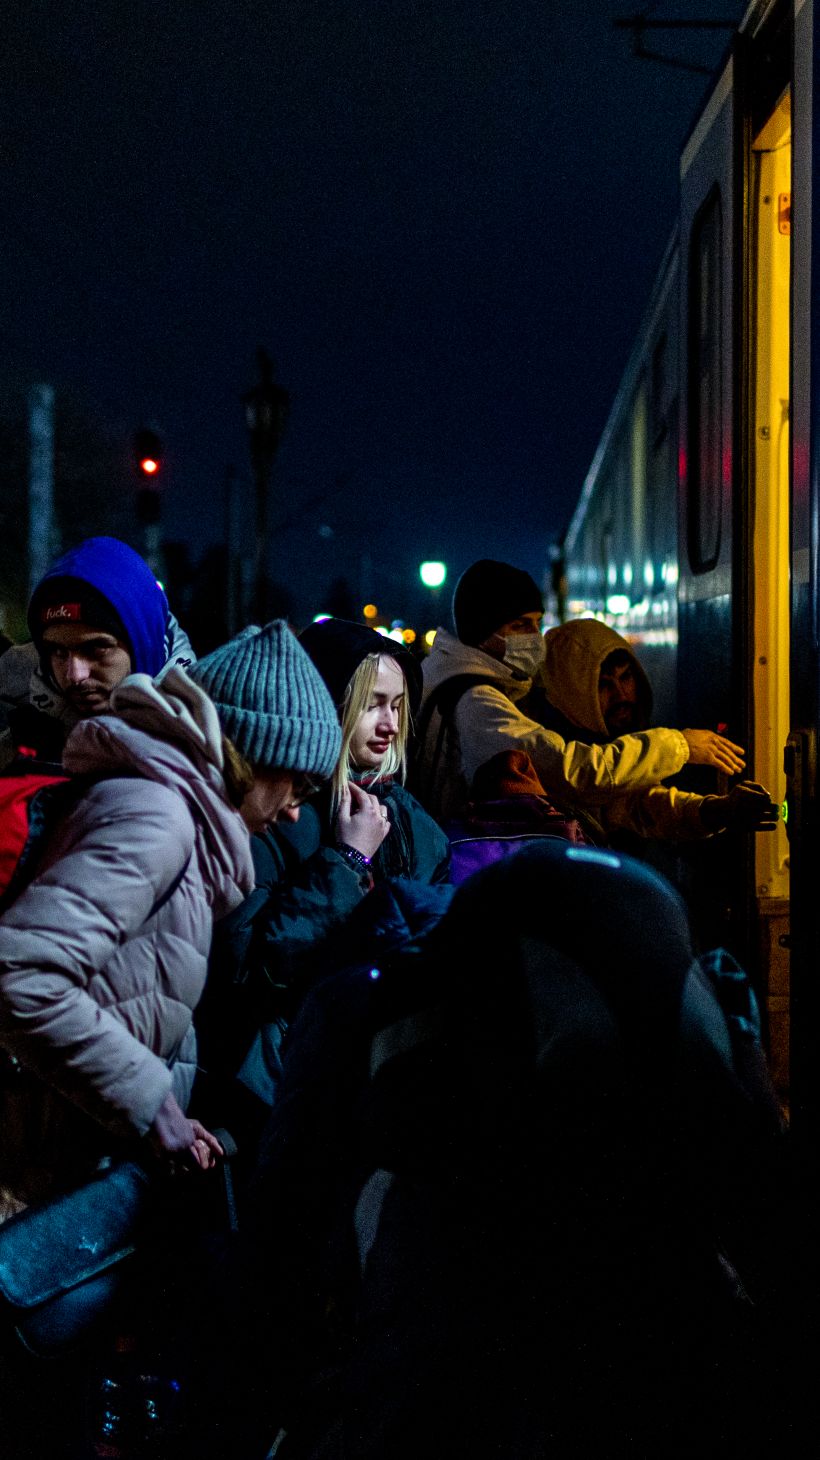 People wait to board a train